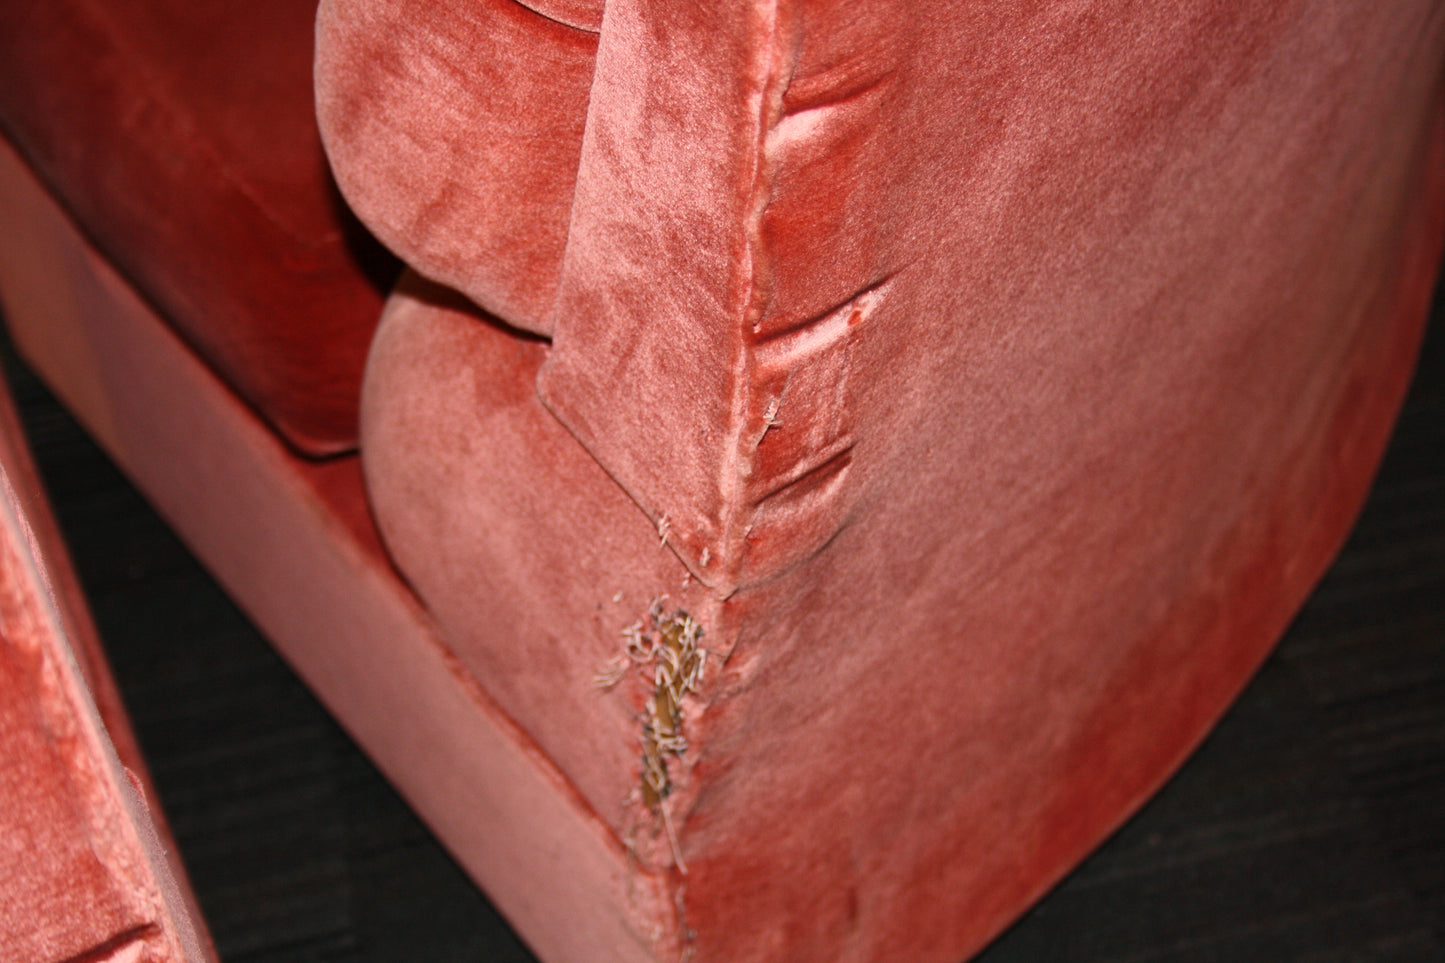 Pink Velvet Modular Sofa